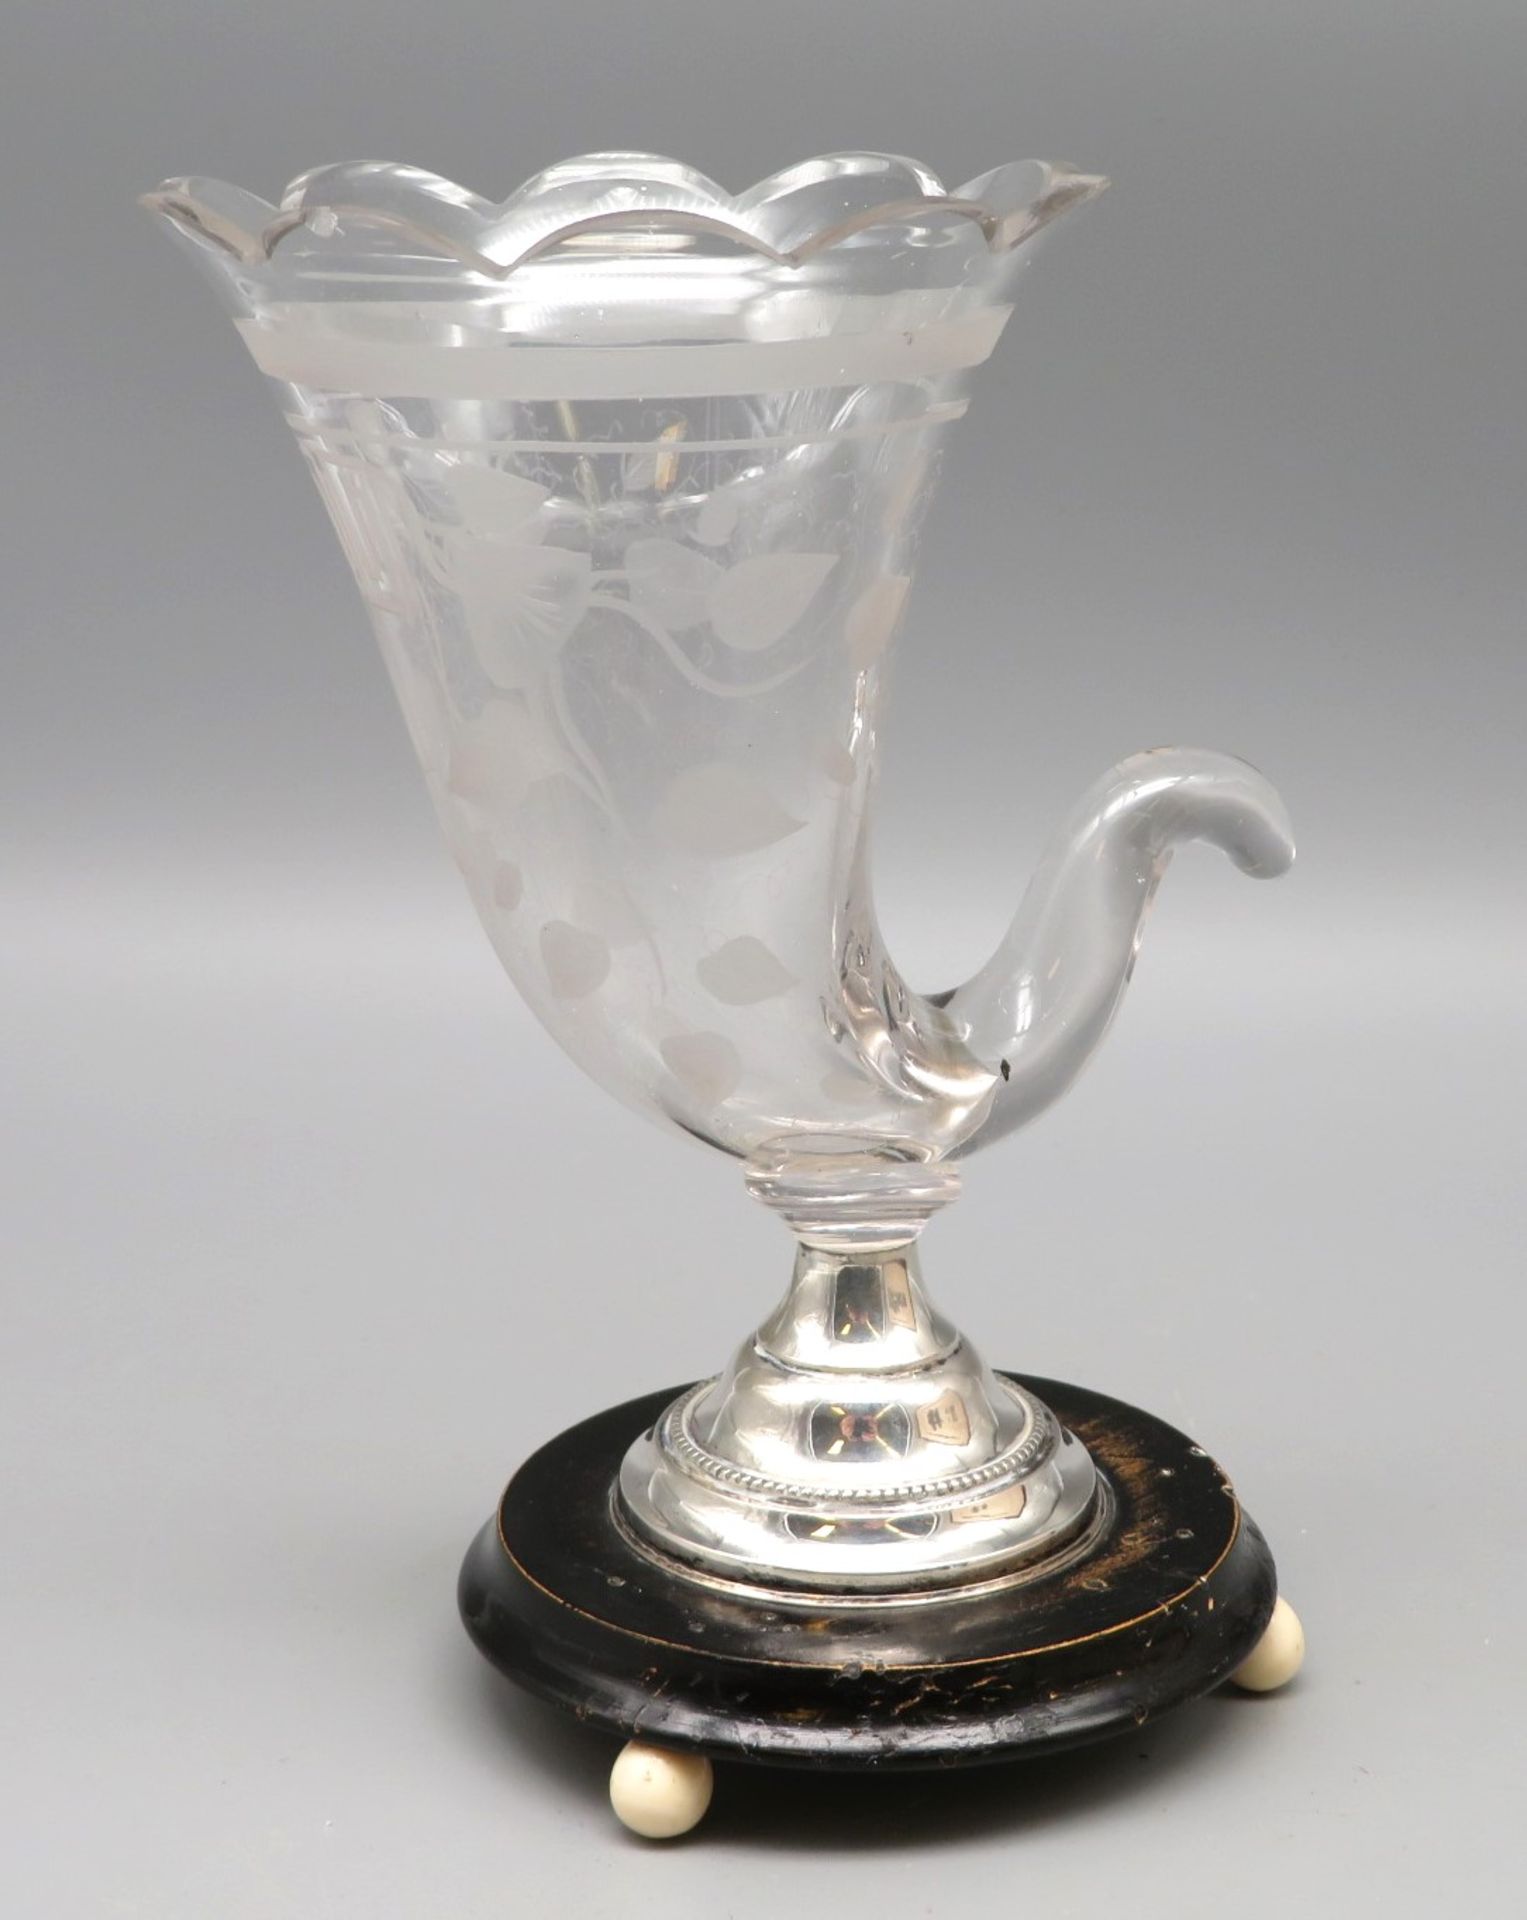 Seltene Zigarren-Vase, Biedermeier, 19. Jahrhundert, farbloses Glas geschliffen, Silbermontur, rund